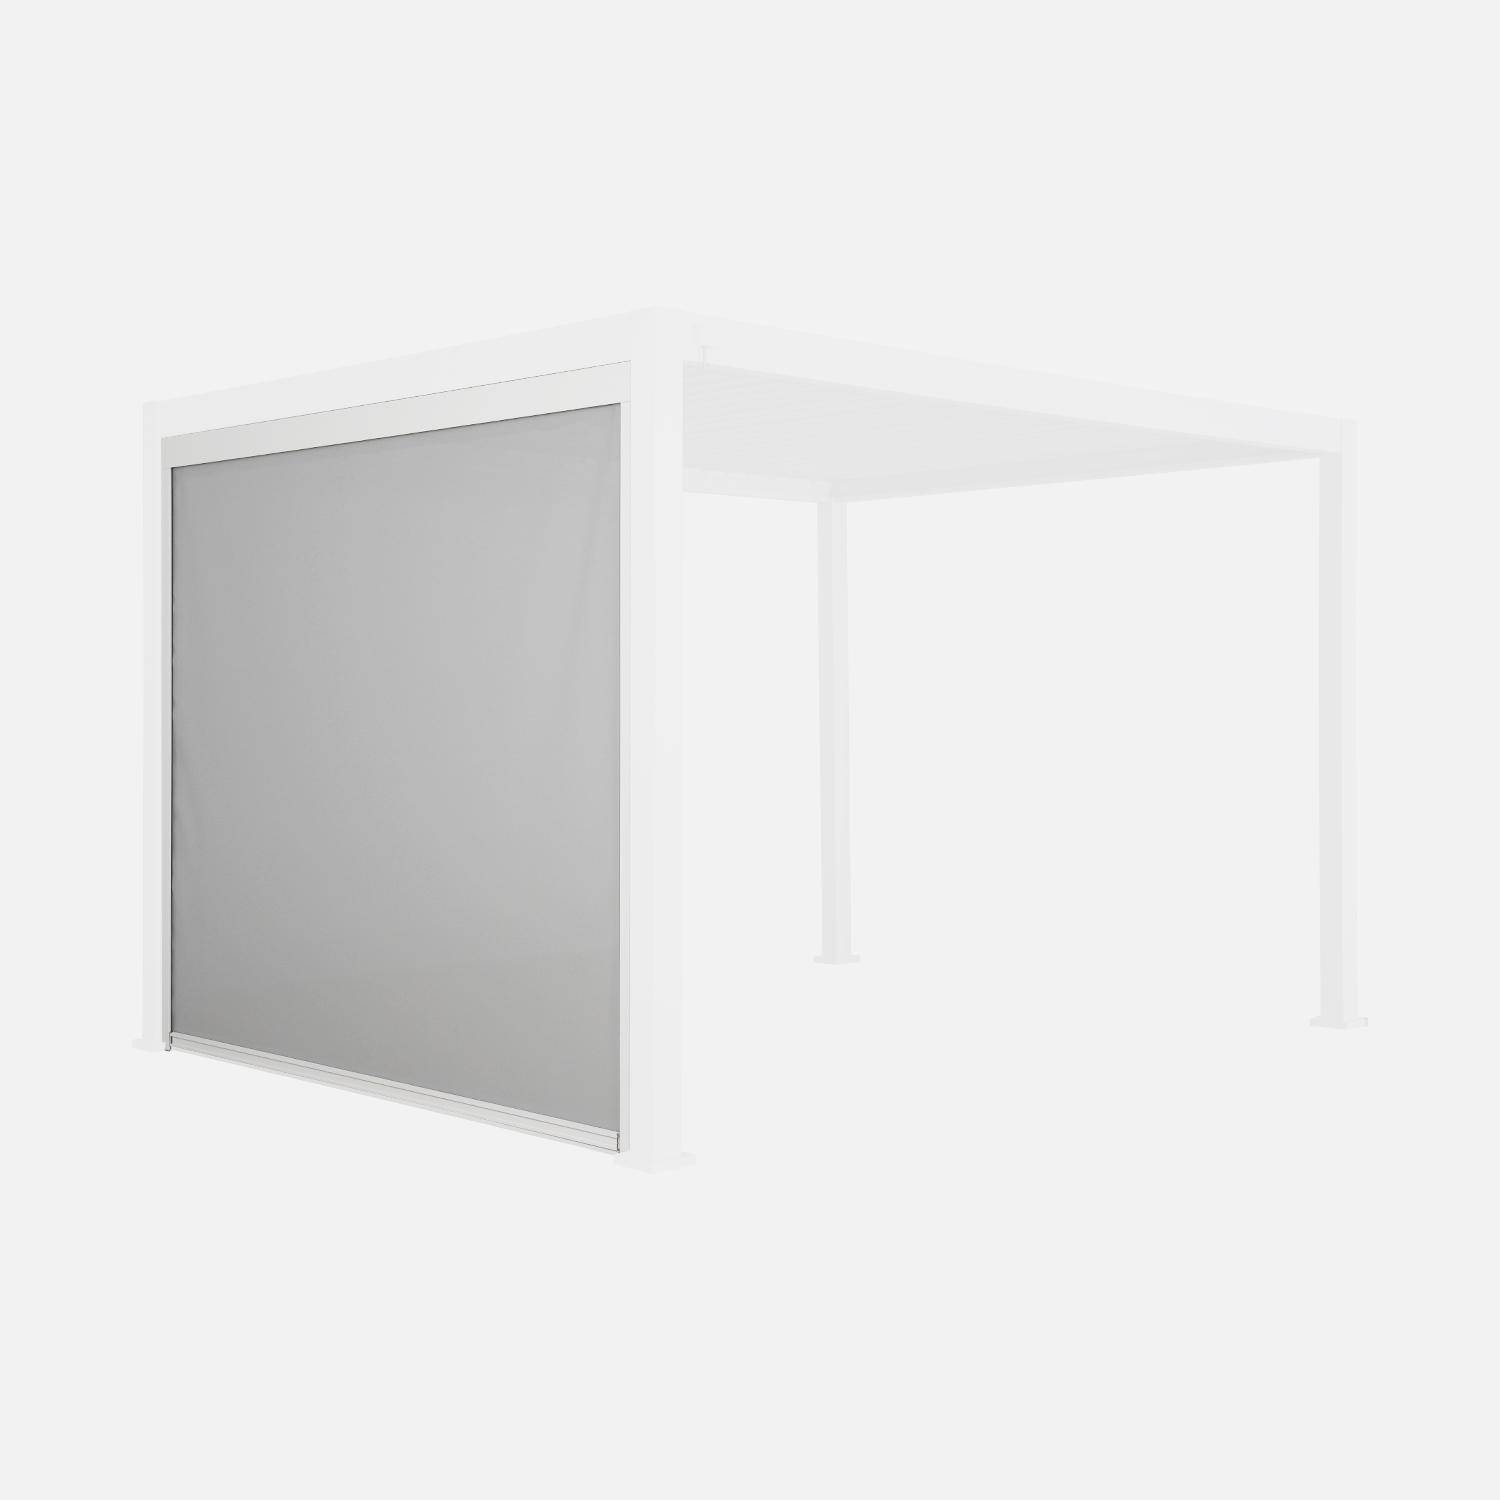 Store blanc pour pergola bioclimatique – Triomphe – 3m, aluminium et textilène Photo3